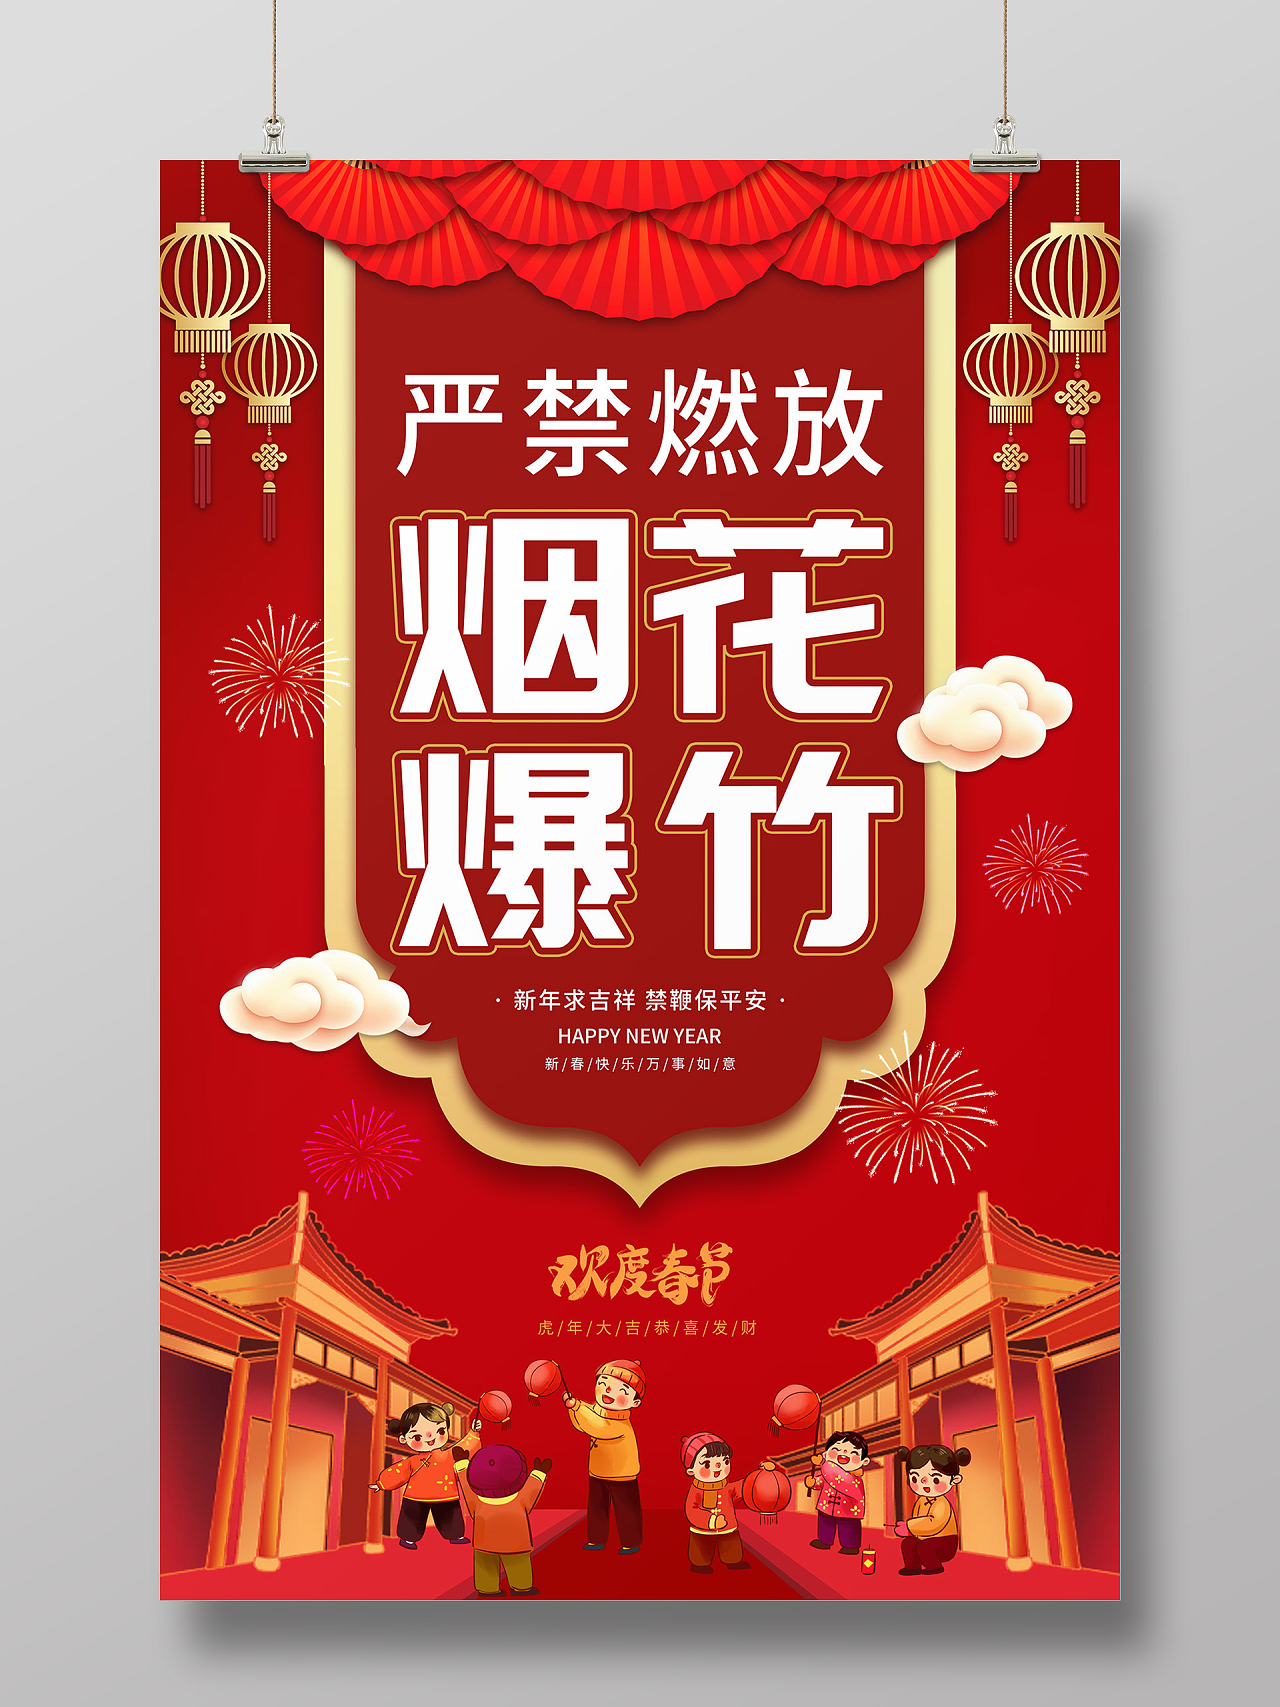 红色缤纷中国风卡通人物春节严禁燃放烟花爆竹海报